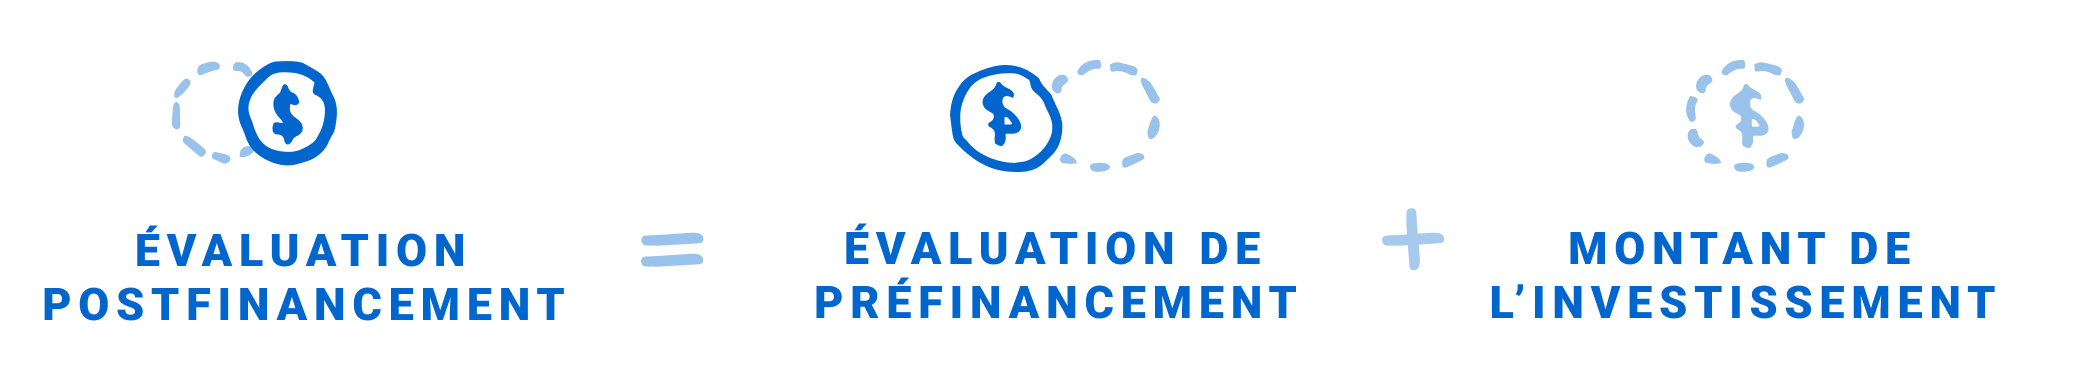 Évaluation postfinancement = évaluation de préfinancement + montant de l’investissement